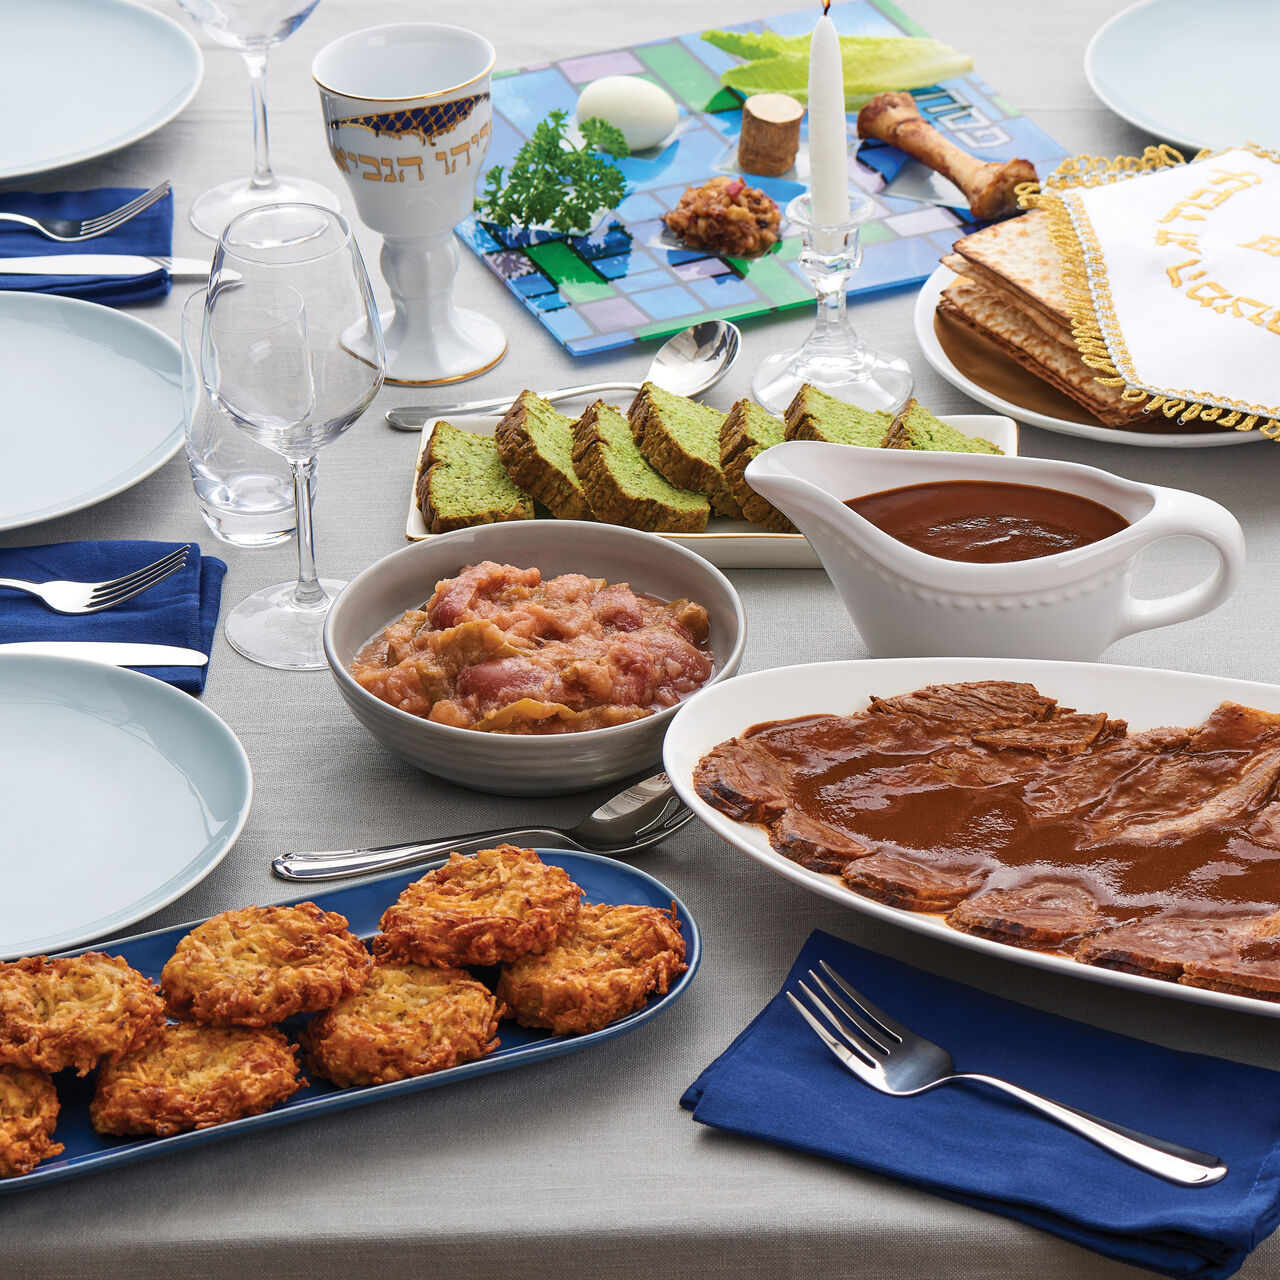 Zabar's Passover Seder Dinner for 6 - No Seder Plate, , large image number 0